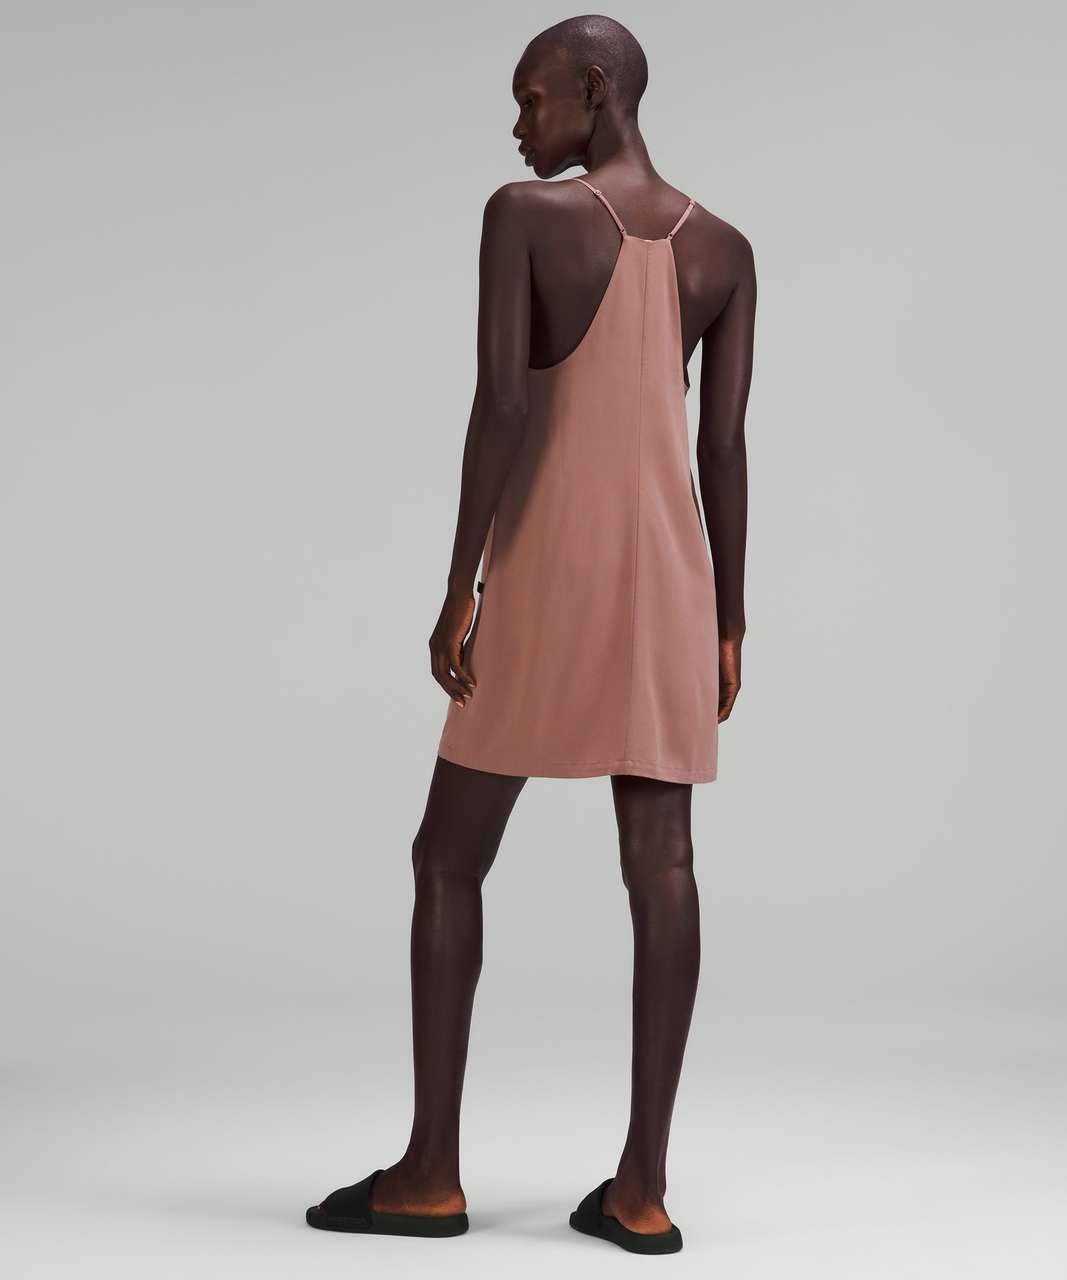 Lululemon lab Adjustable Thin Strap Dress - Twilight Mauve - lulu fanatics